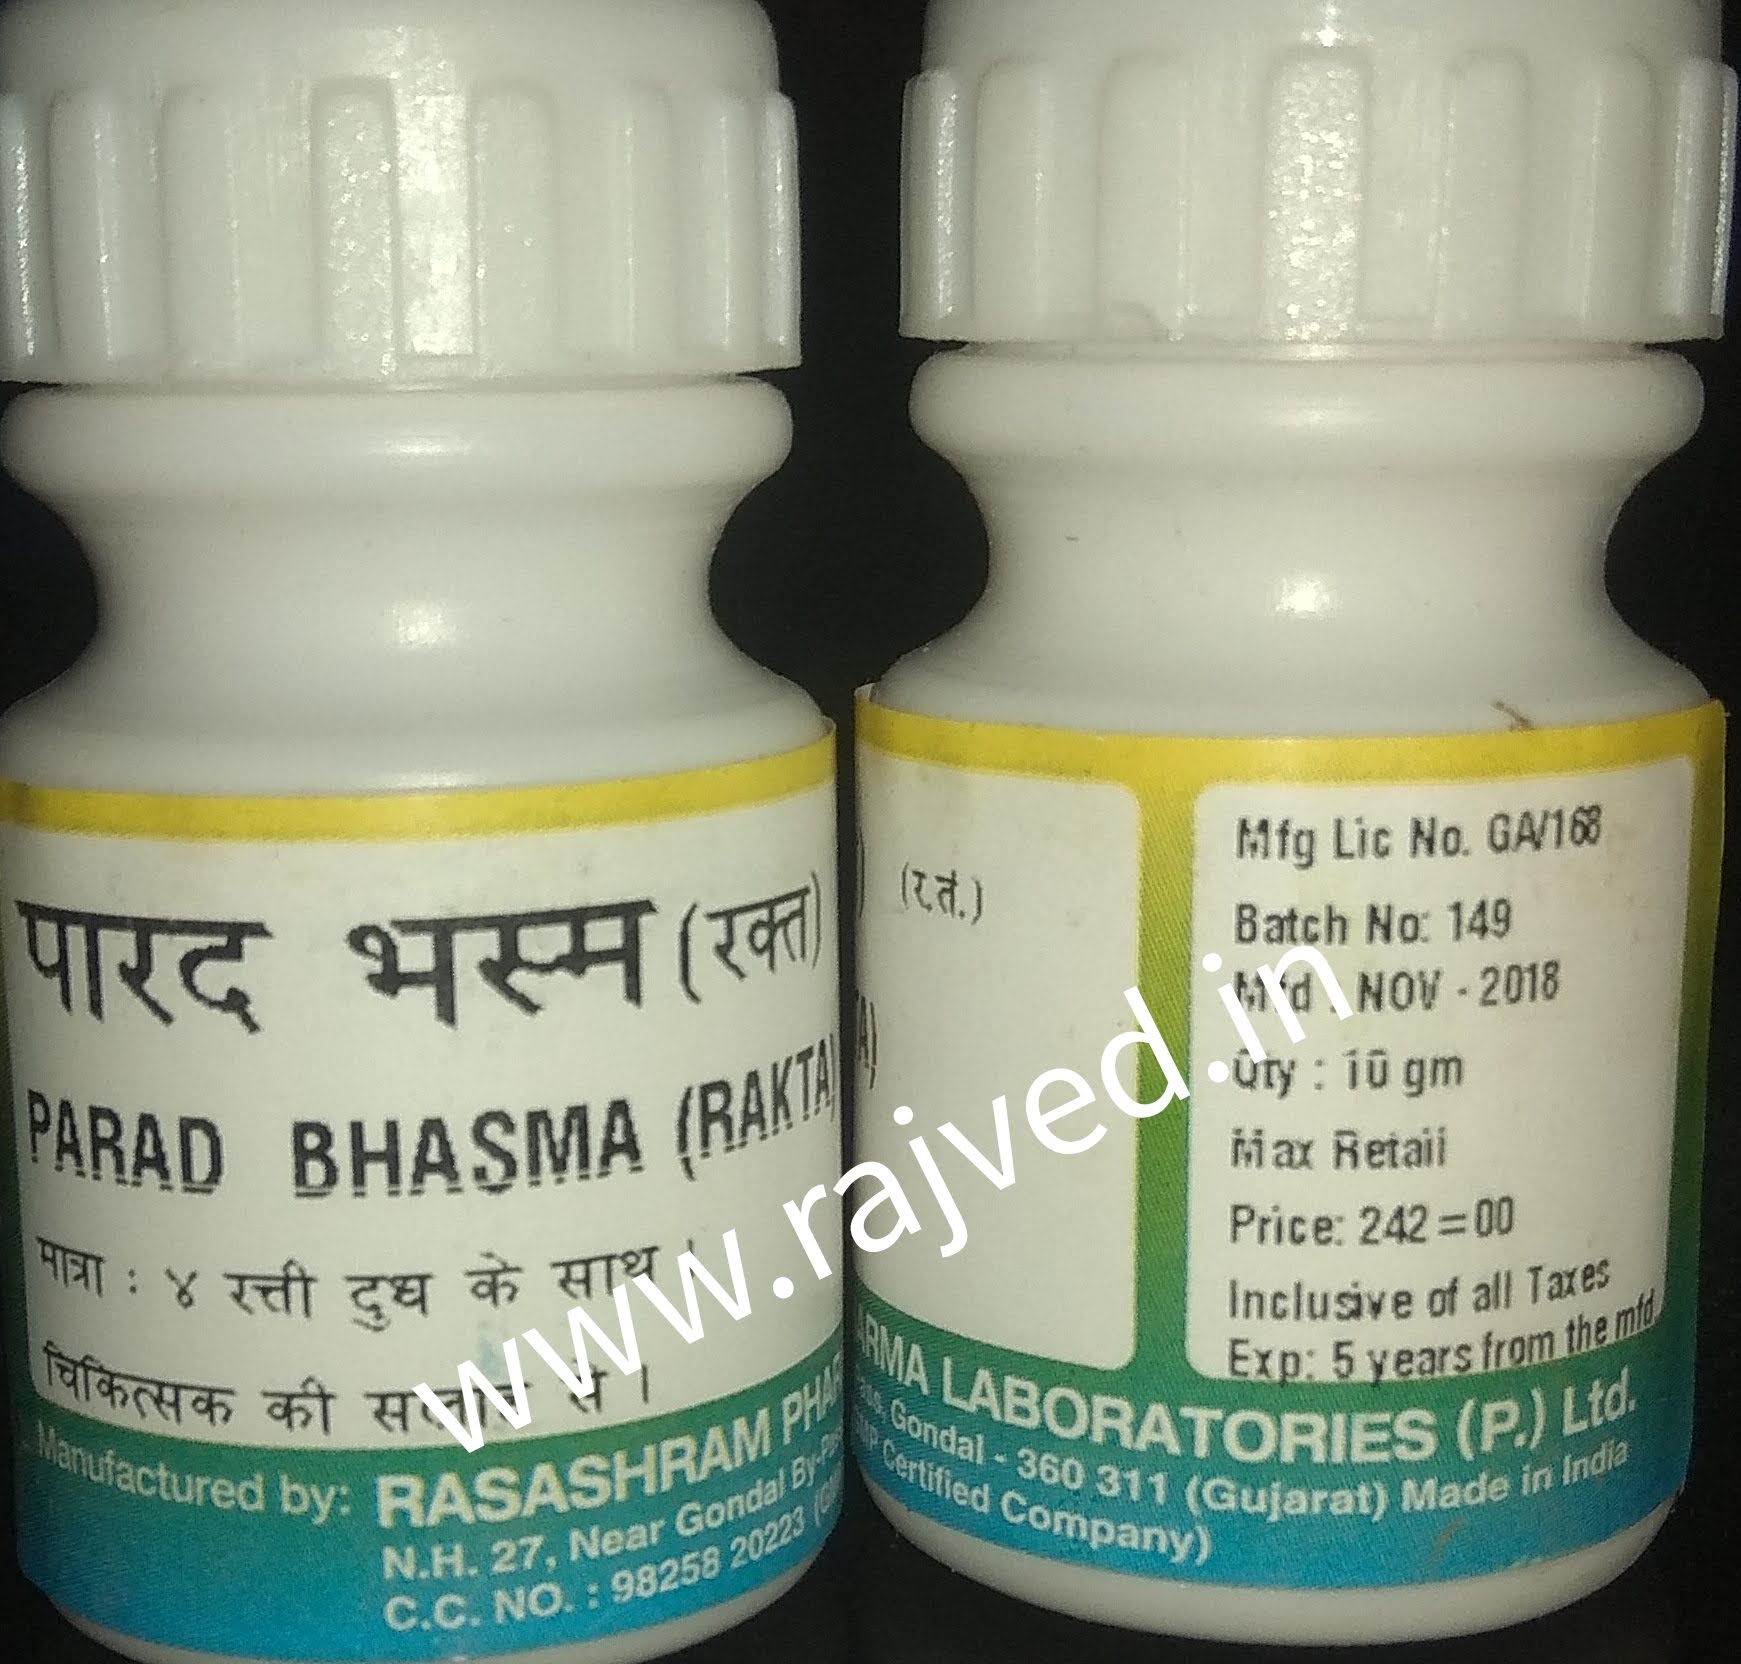 parad bhasma rakta 5 gm Rasashram Pharma